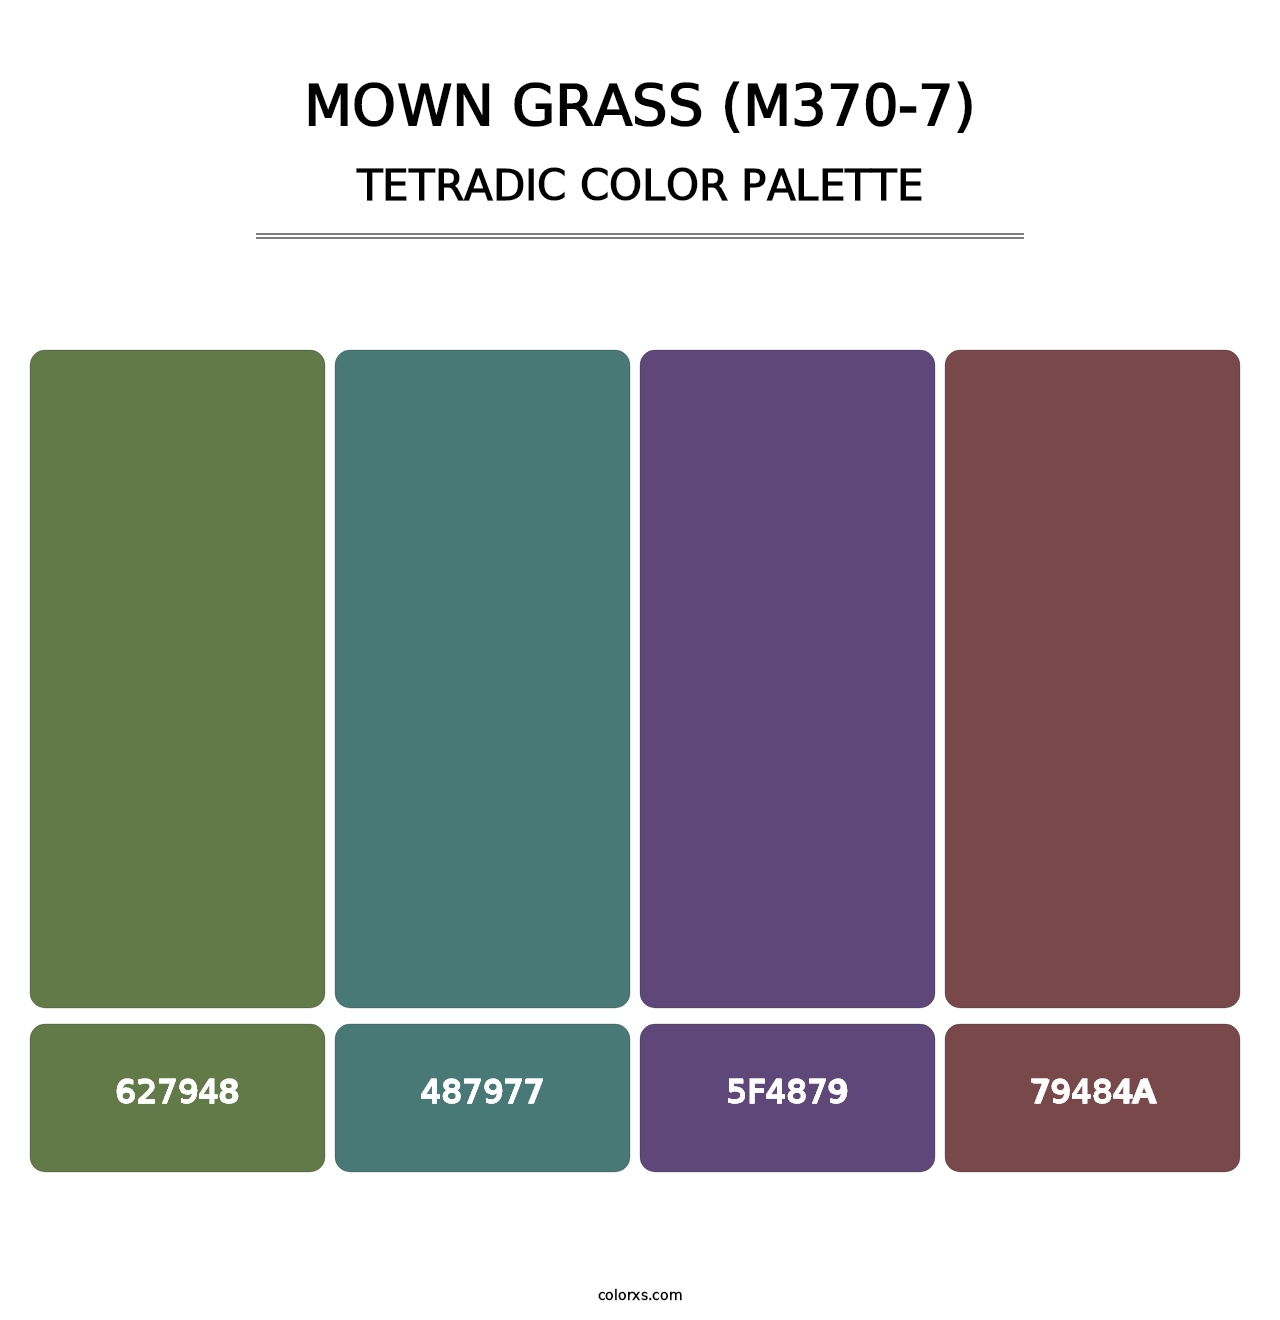 Mown Grass (M370-7) - Tetradic Color Palette